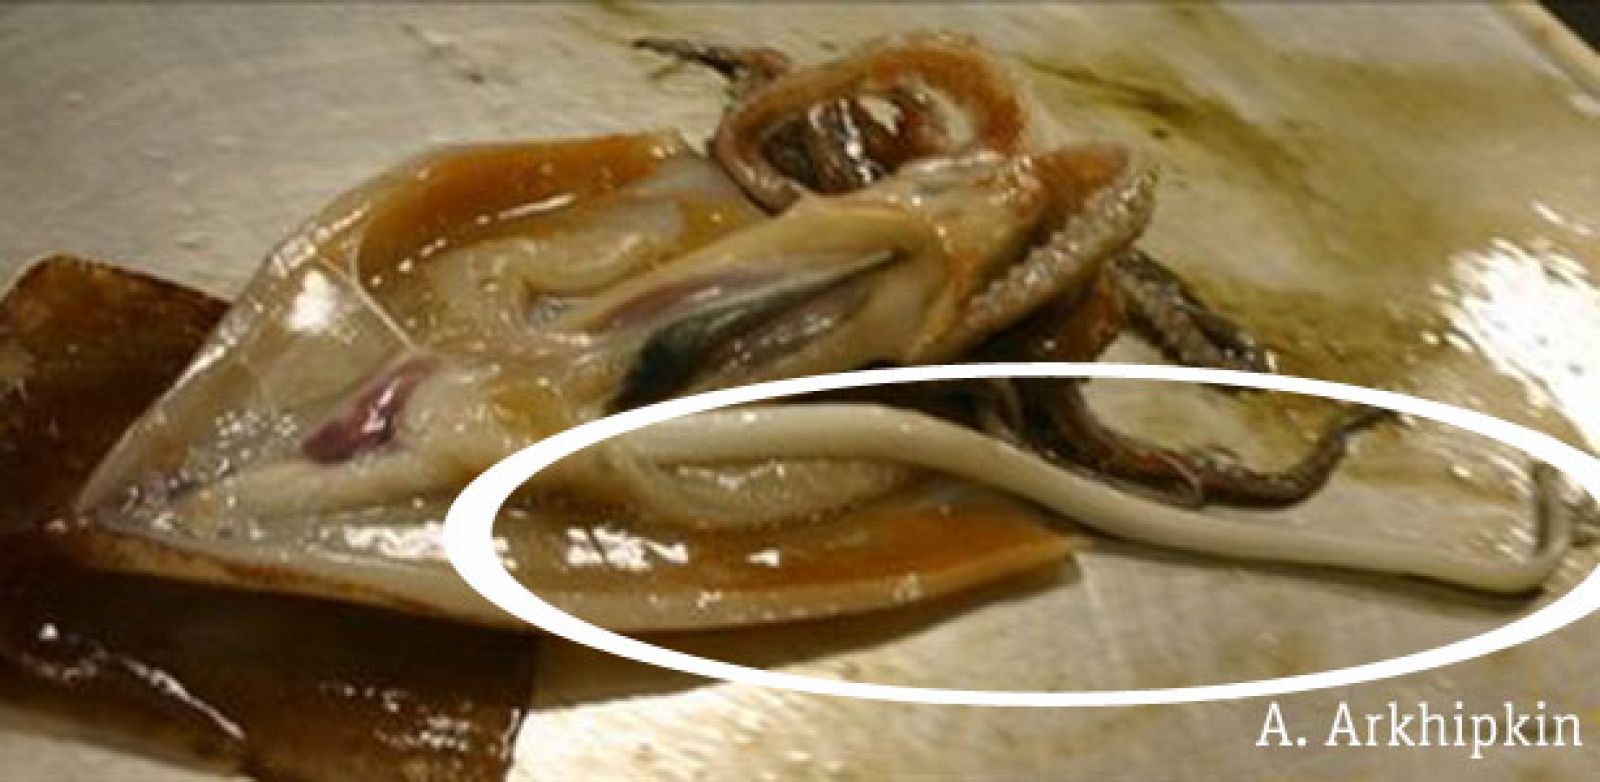 Gracias a este calamar gigante se pueden haber descubierto sus hábitos de reproducción